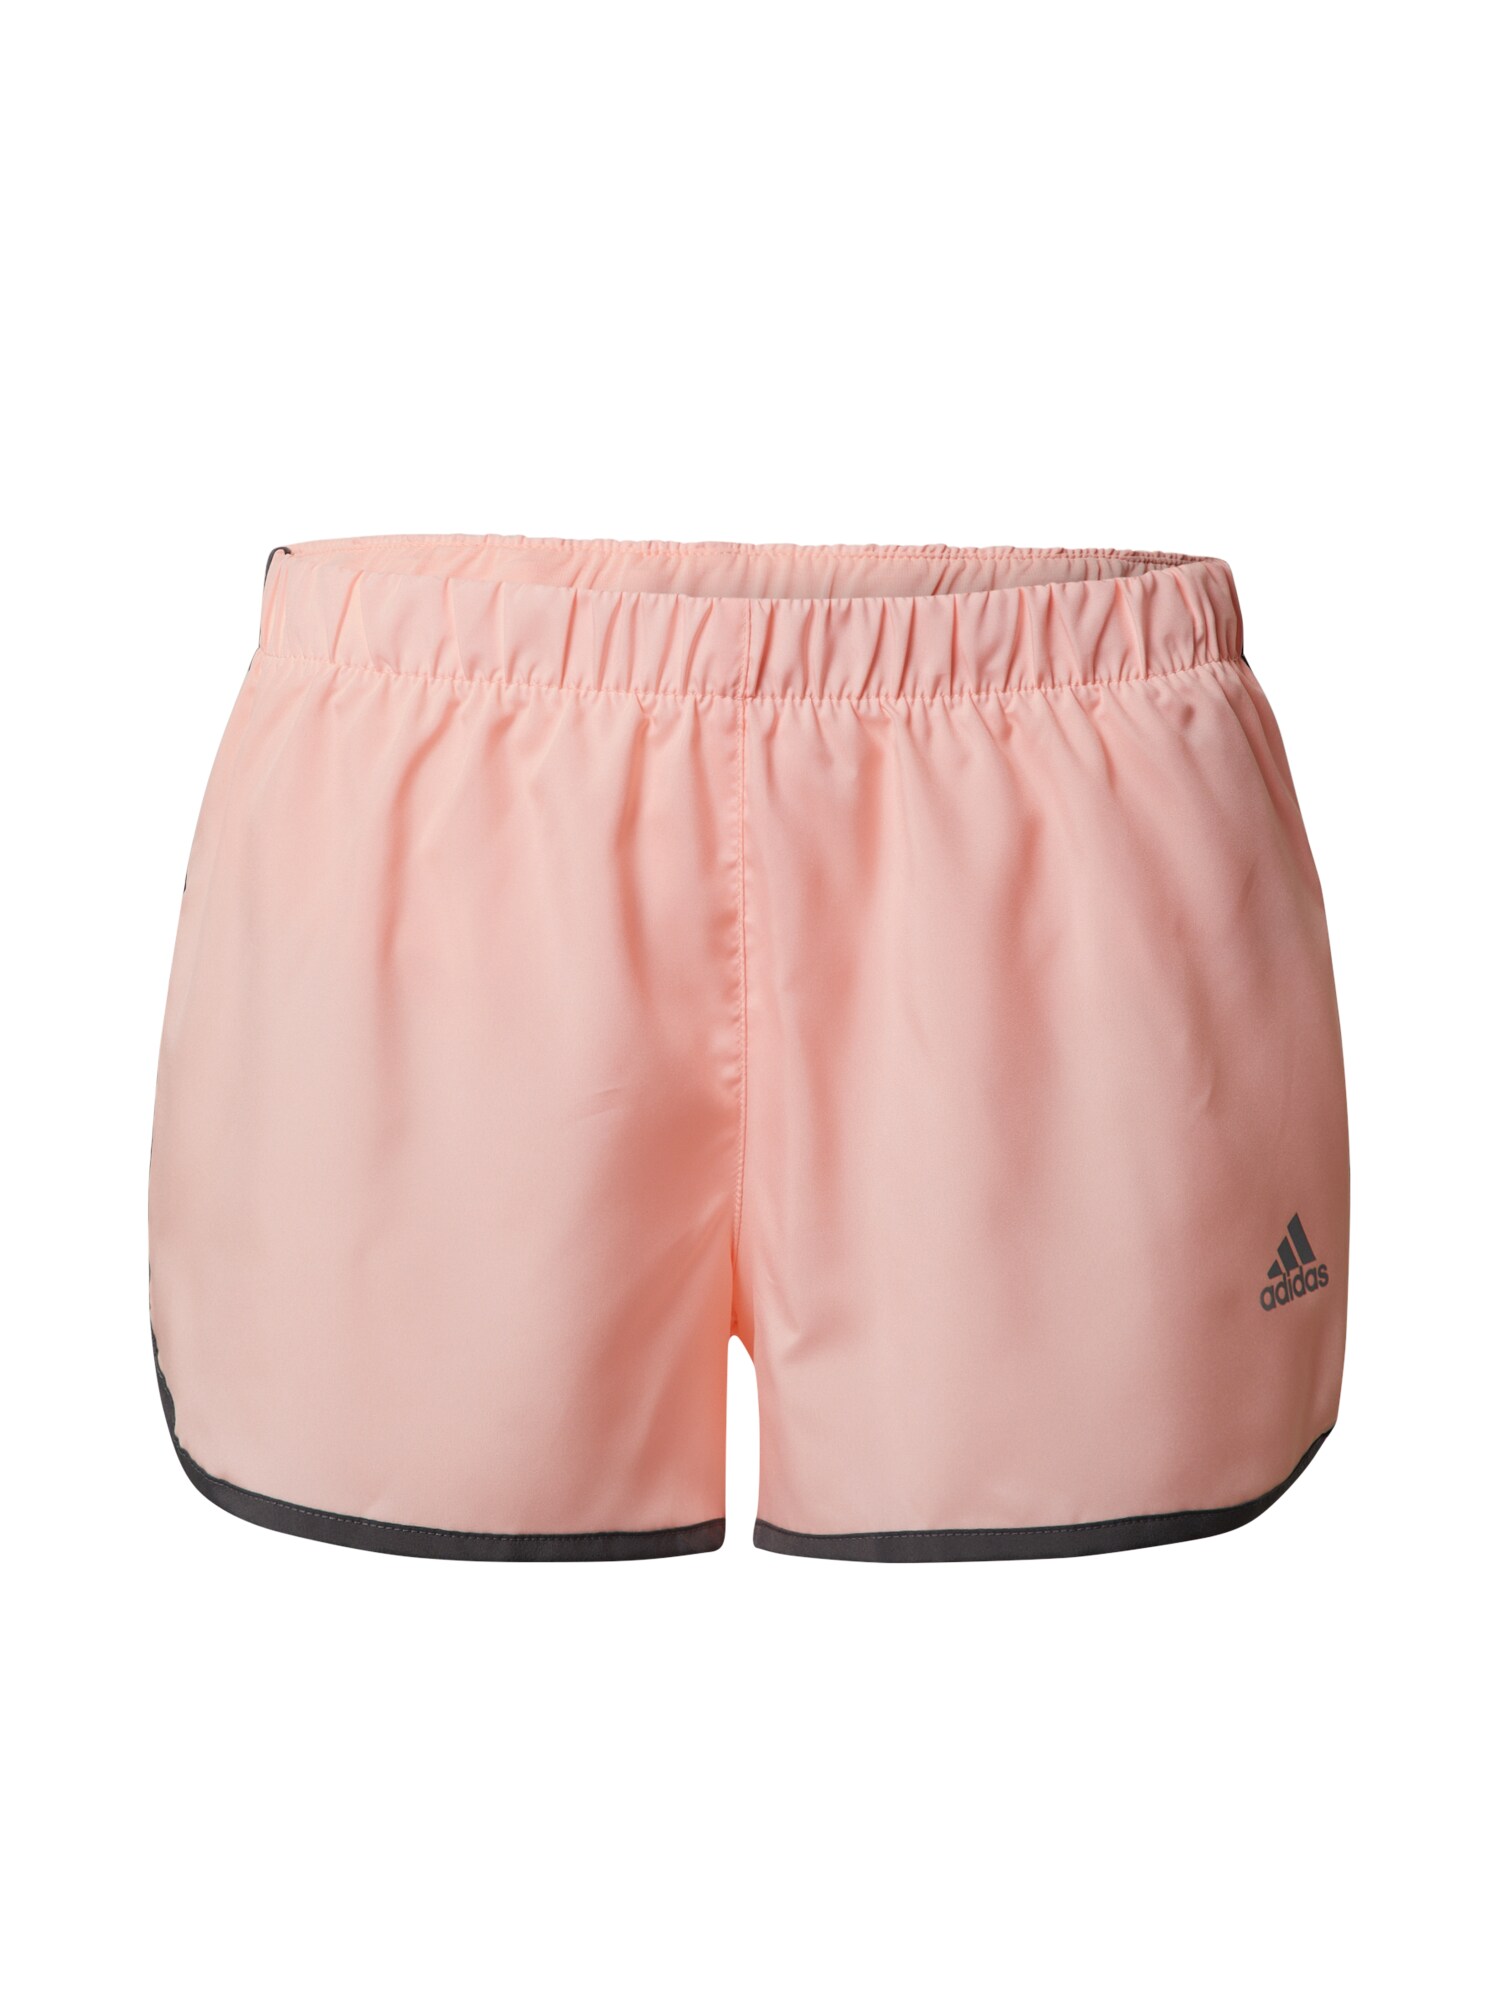 ADIDAS PERFORMANCE Sportinės kelnės 'Marathon'  ryškiai rožinė spalva